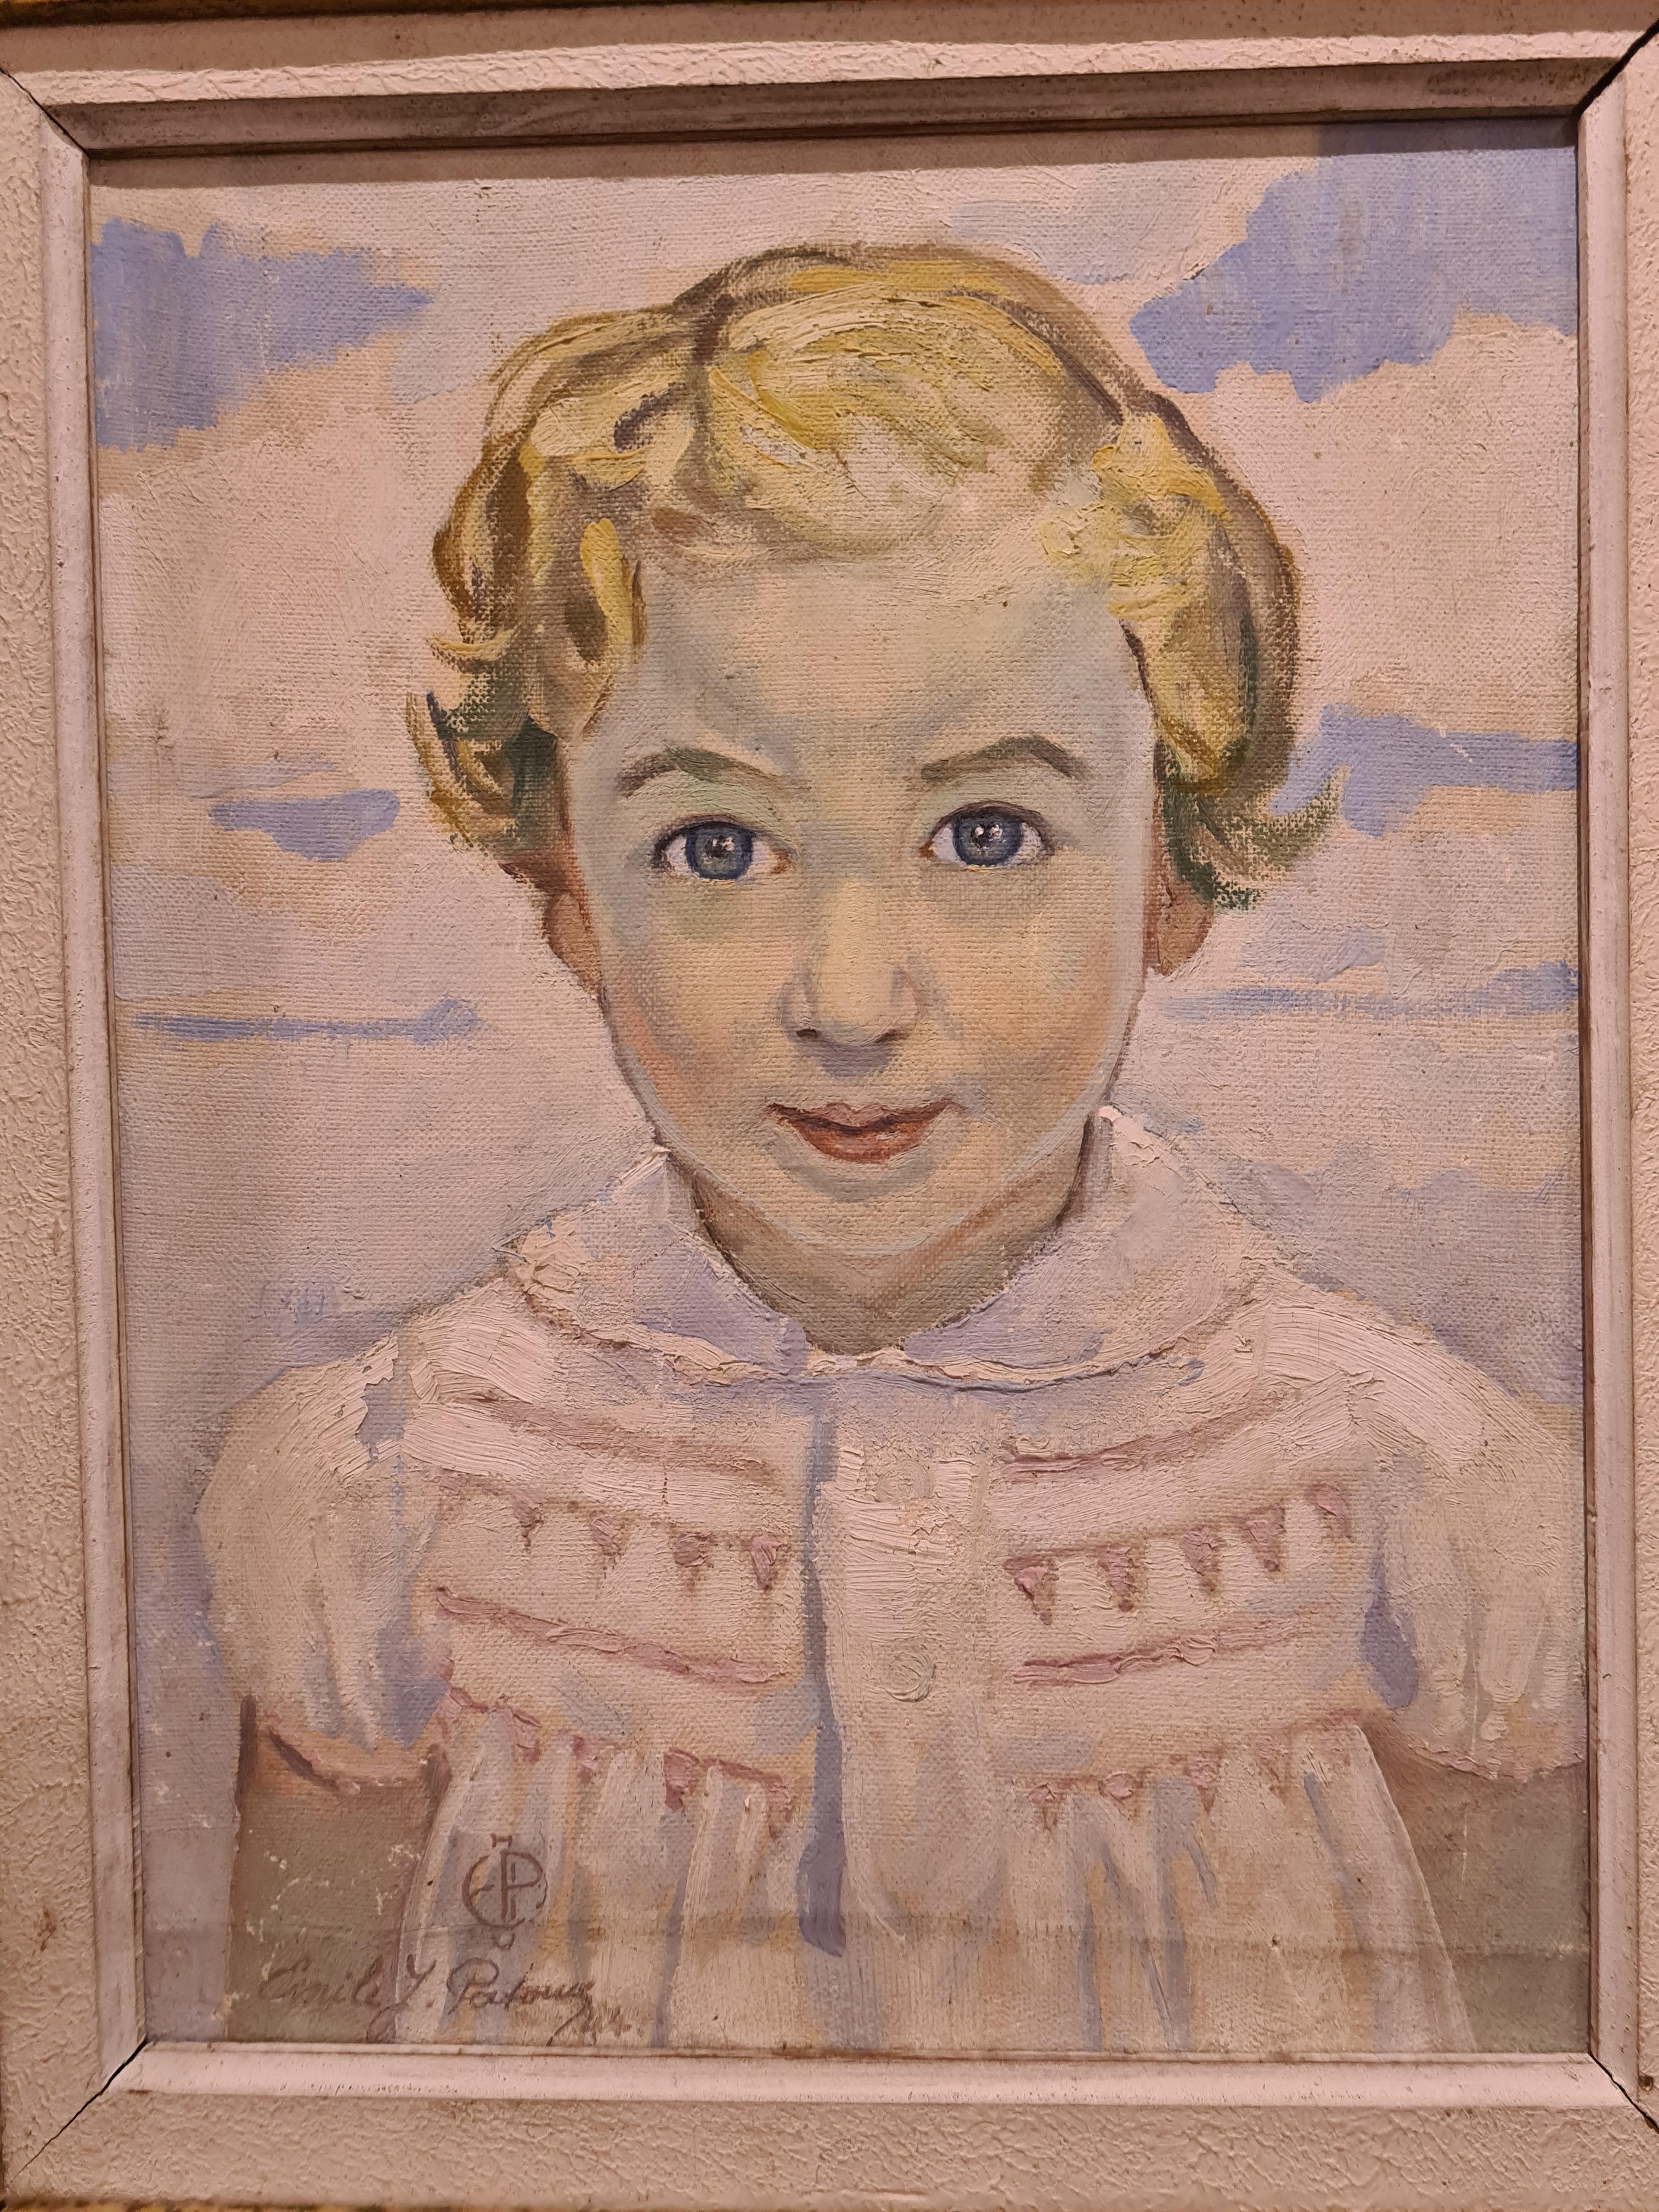 Alice, Postimpressionistisches Porträt eines jungen Mädchens. – Painting von Emile Jean Patoux